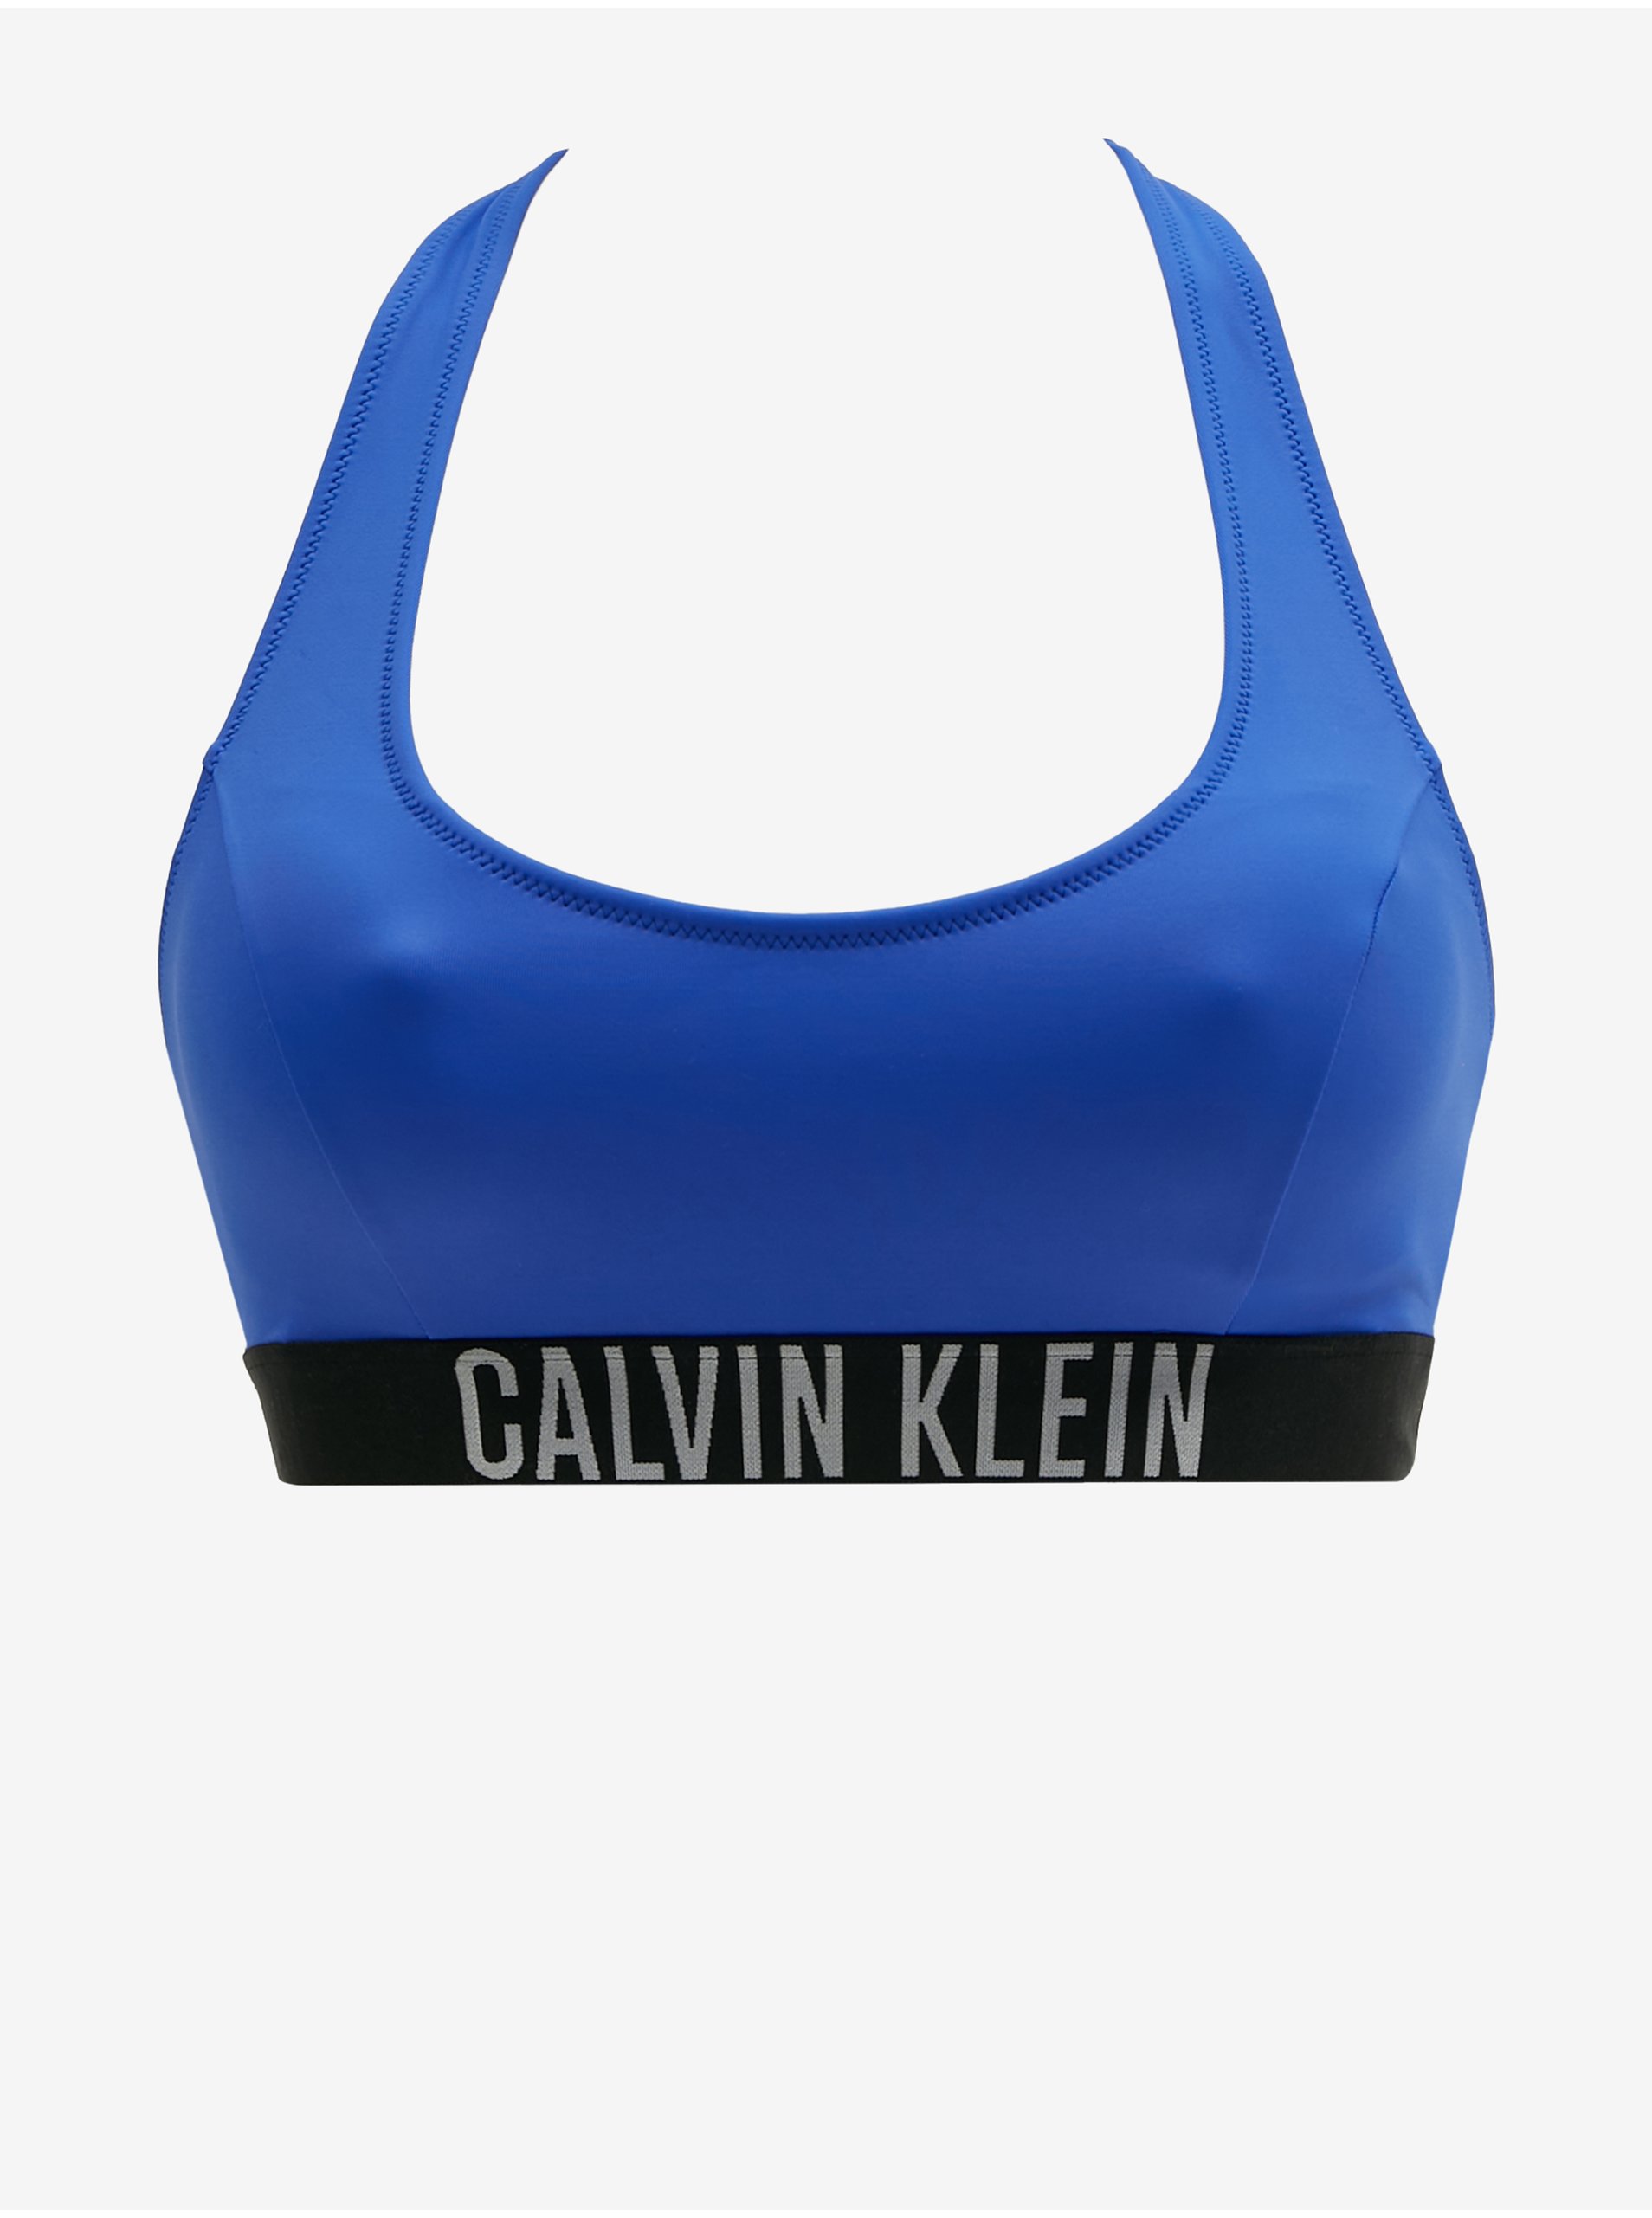 Dark blue women's Swimwear Upper Calvin Klein Underwear - Women